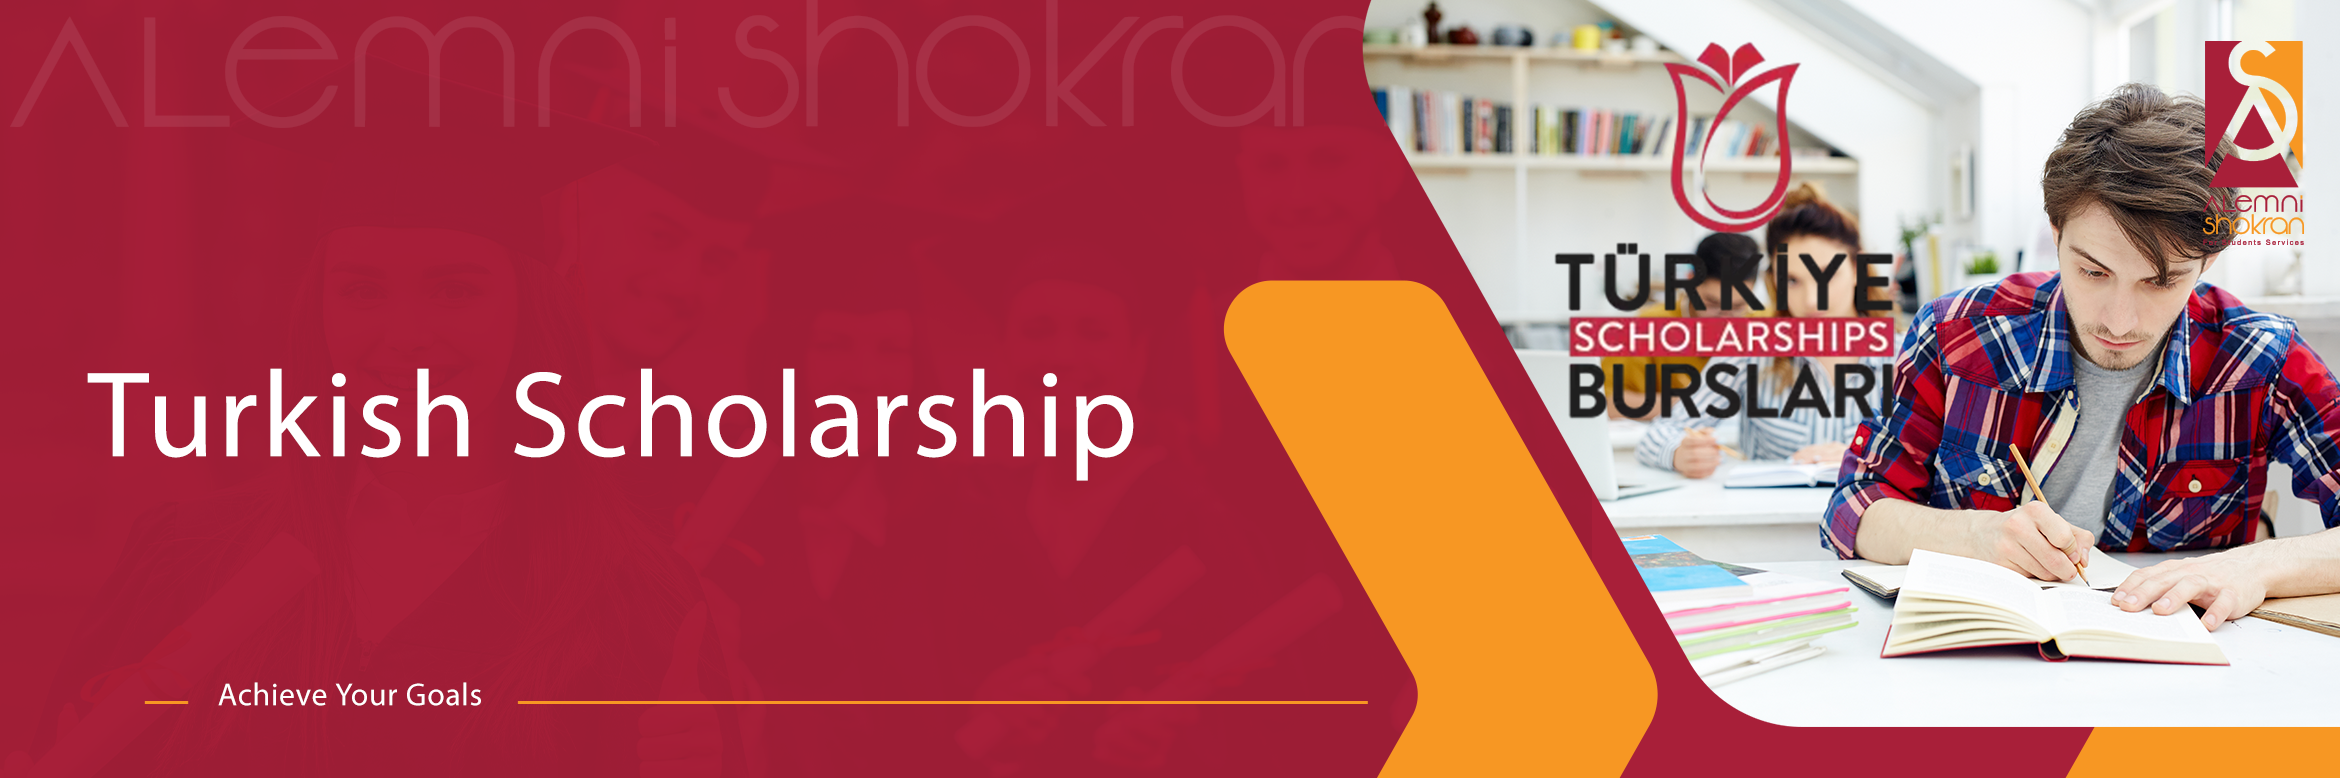 Turkish Scholarship